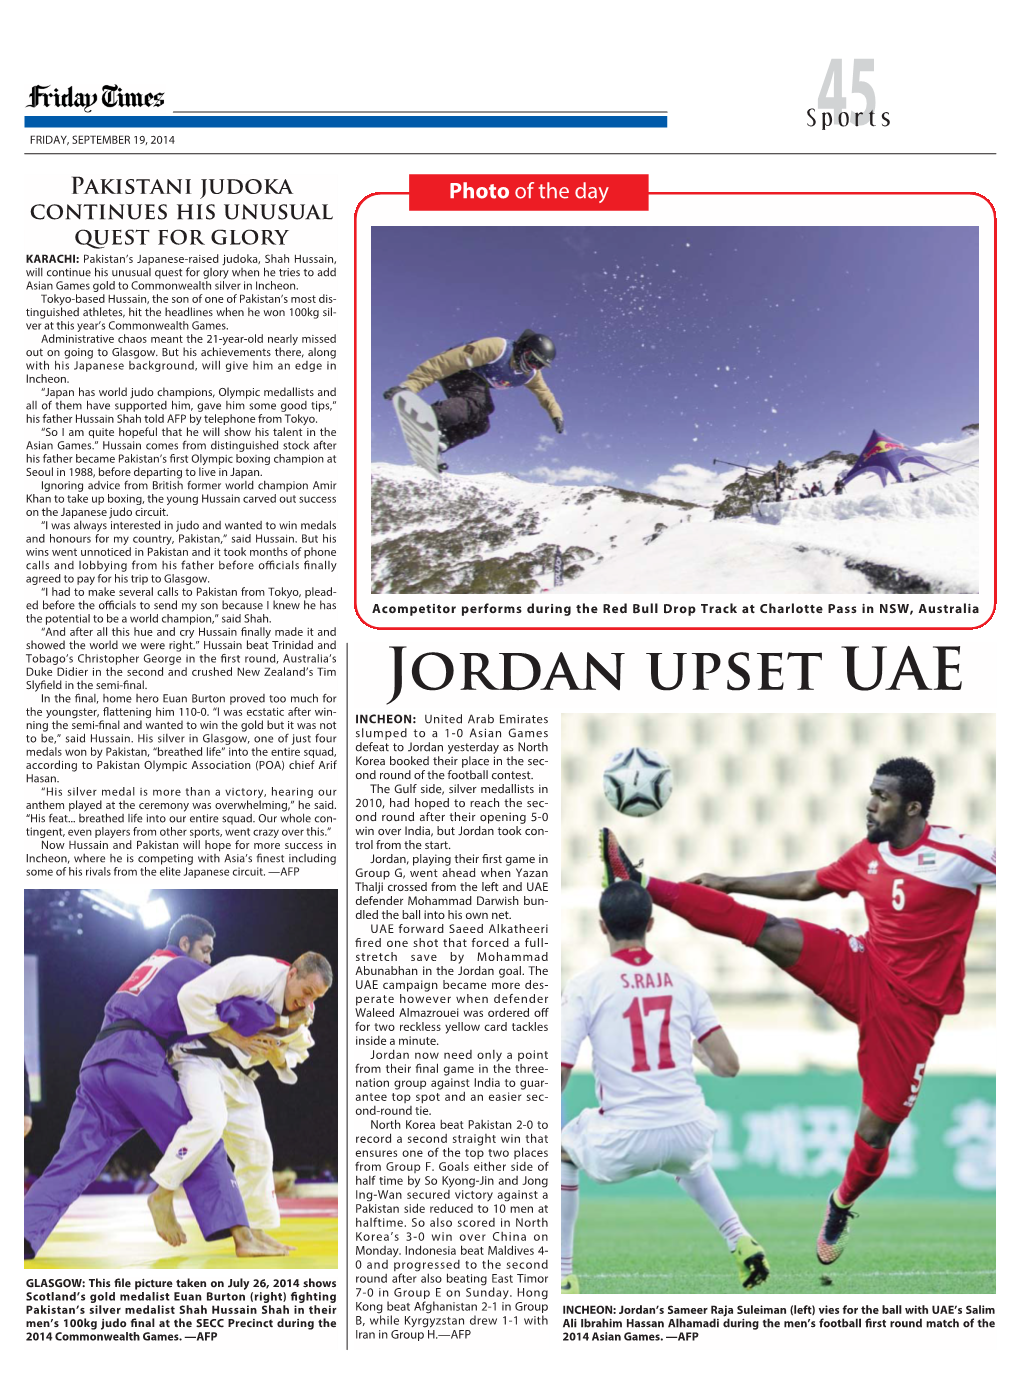 Jordan Upset UAE Slyfield in the Semi-Final